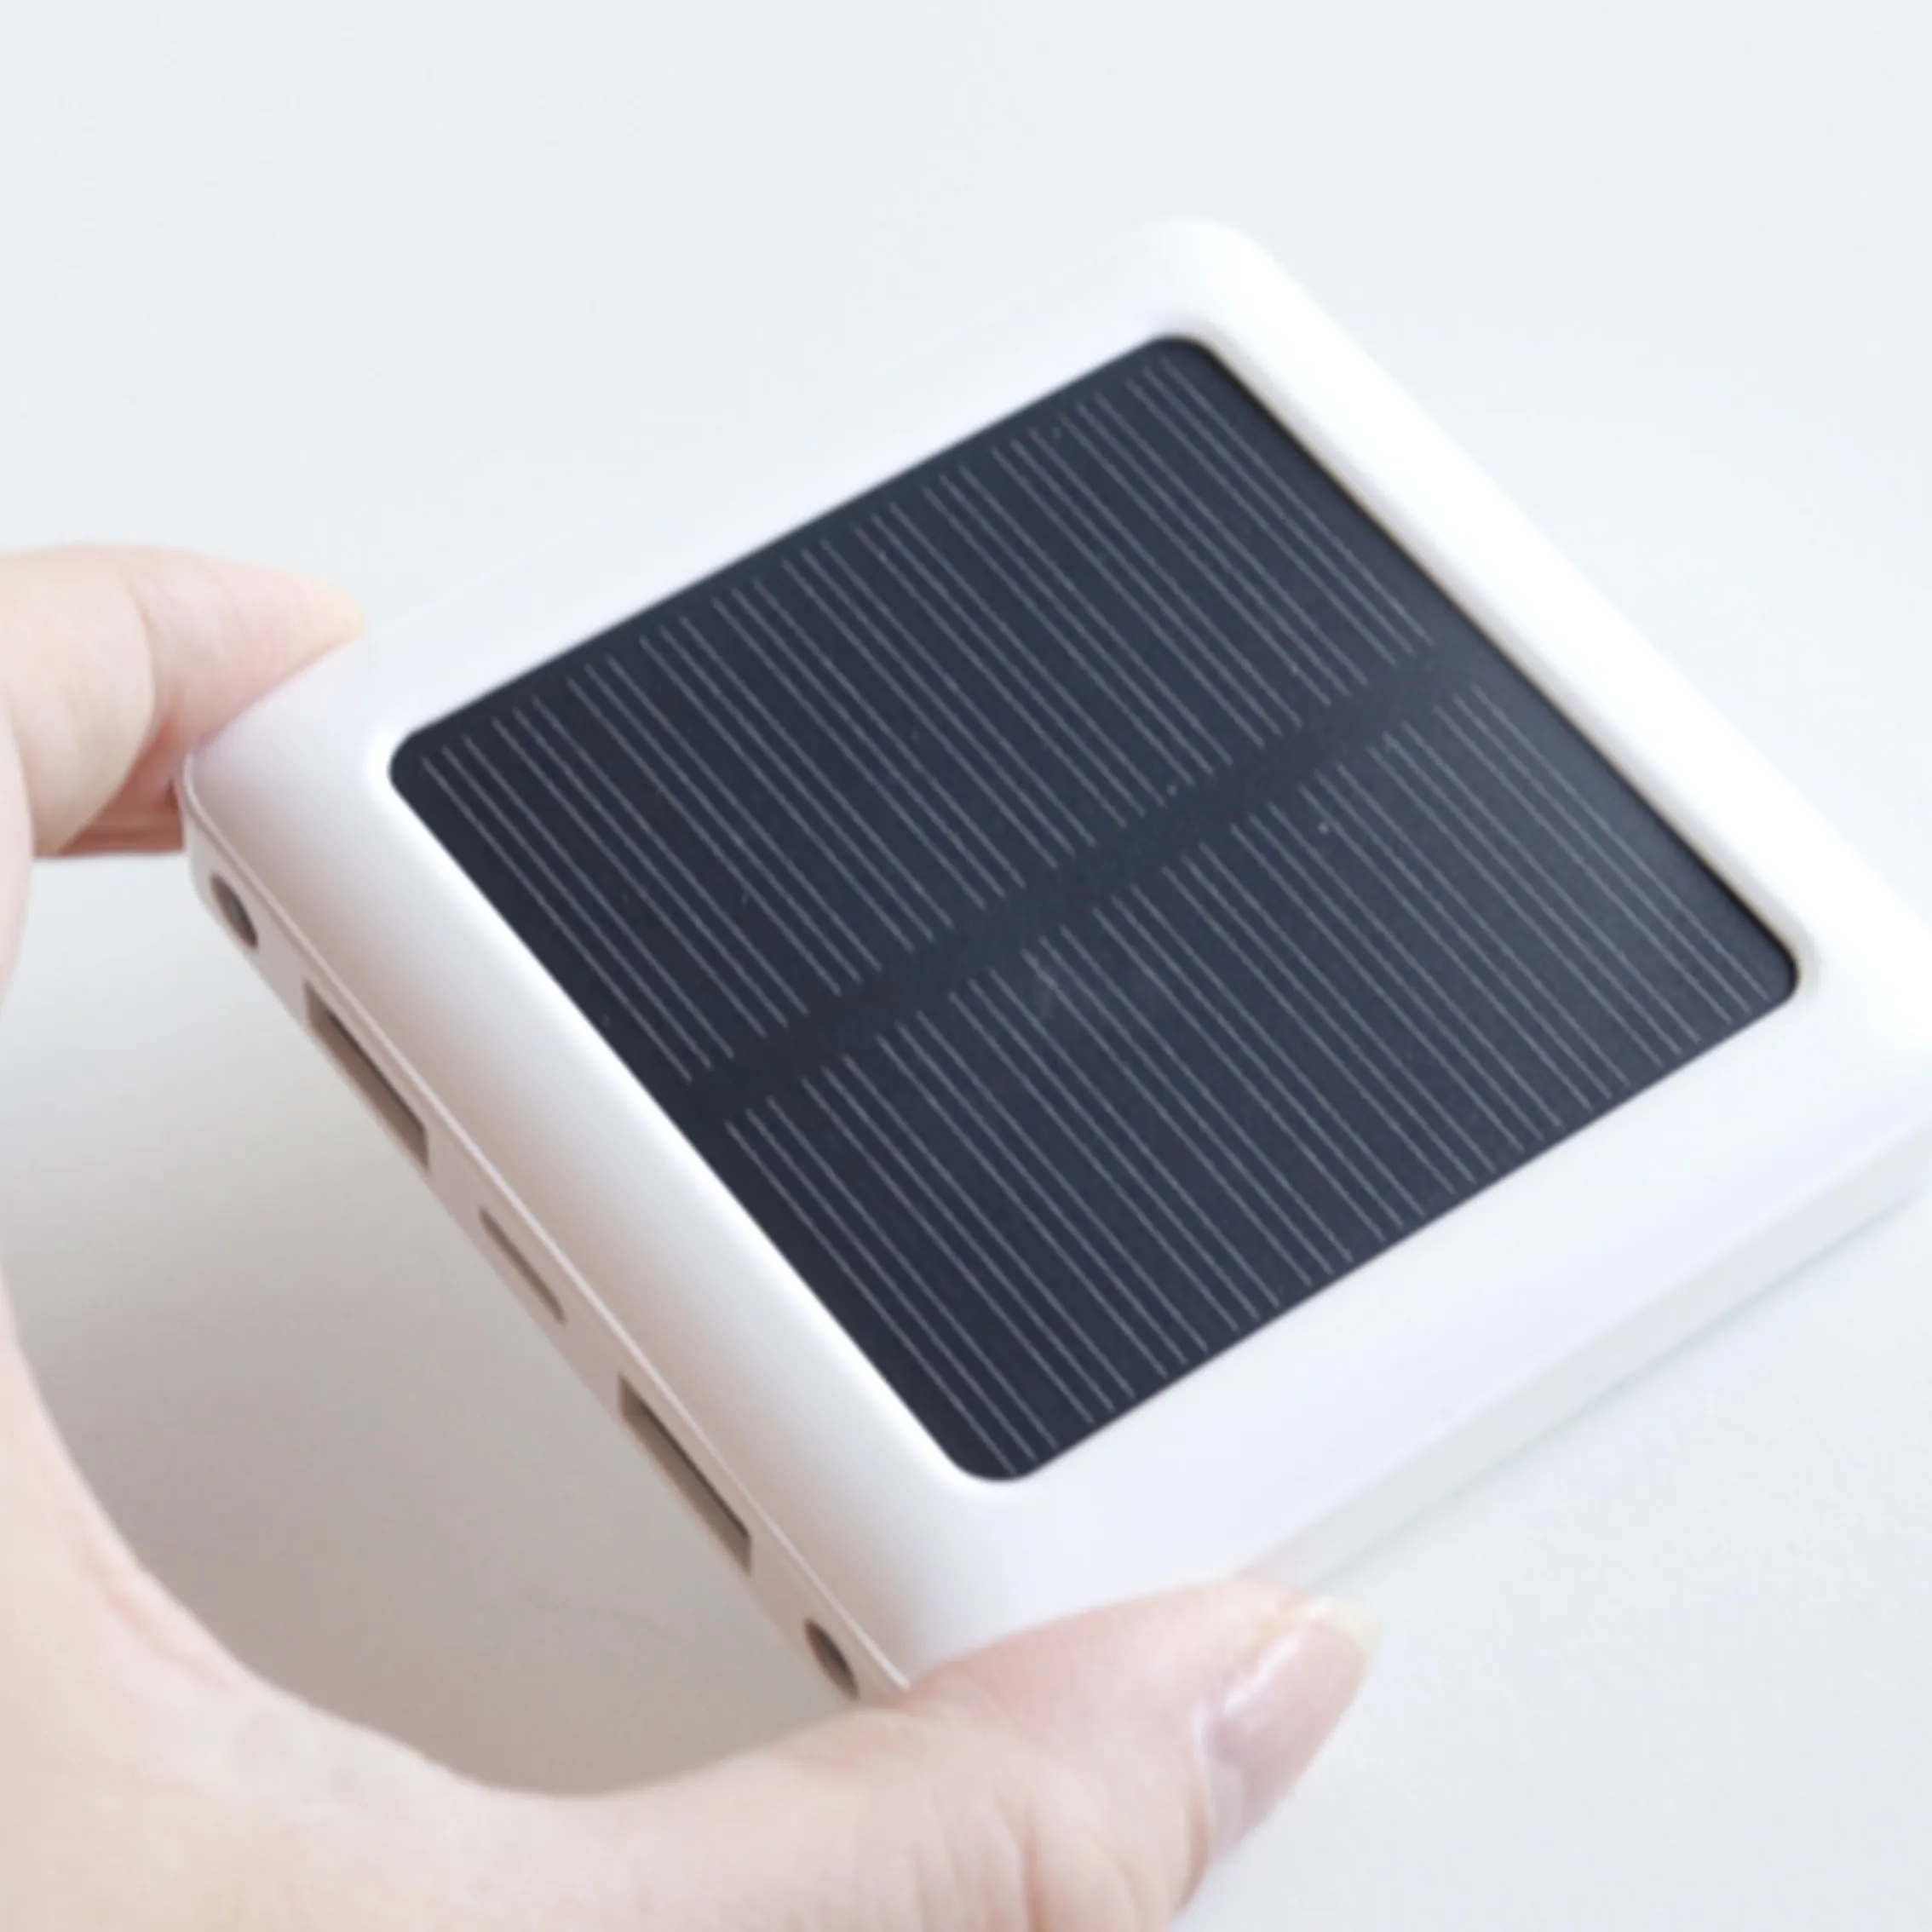 2022 Best Selling Mini Slim Solar Power Bank 5000mAh Best For Gift Pocket USE